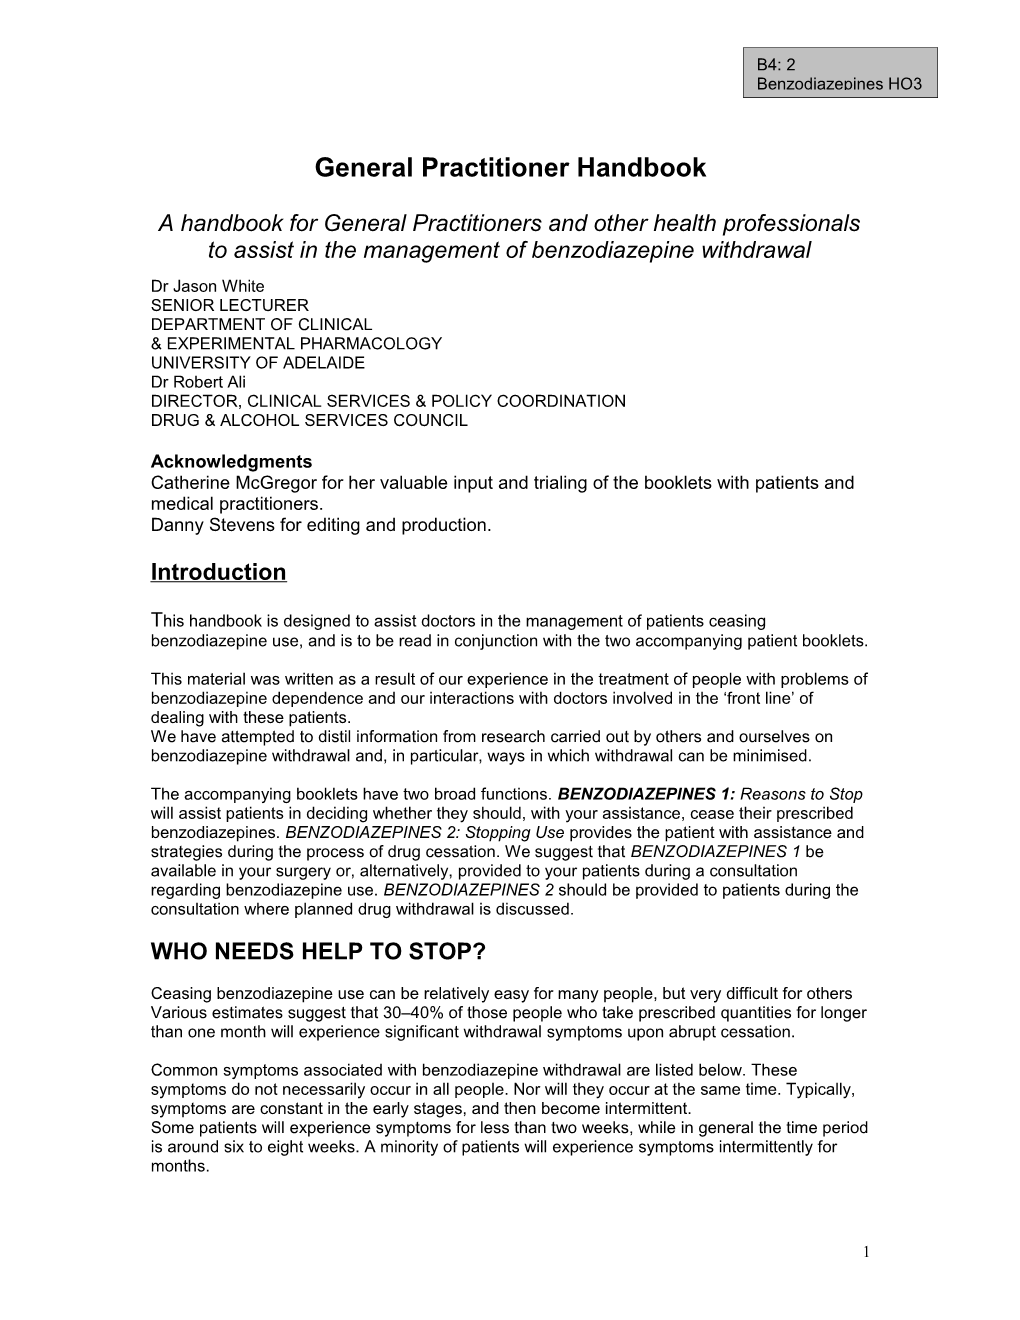 General Practitioner Handbook